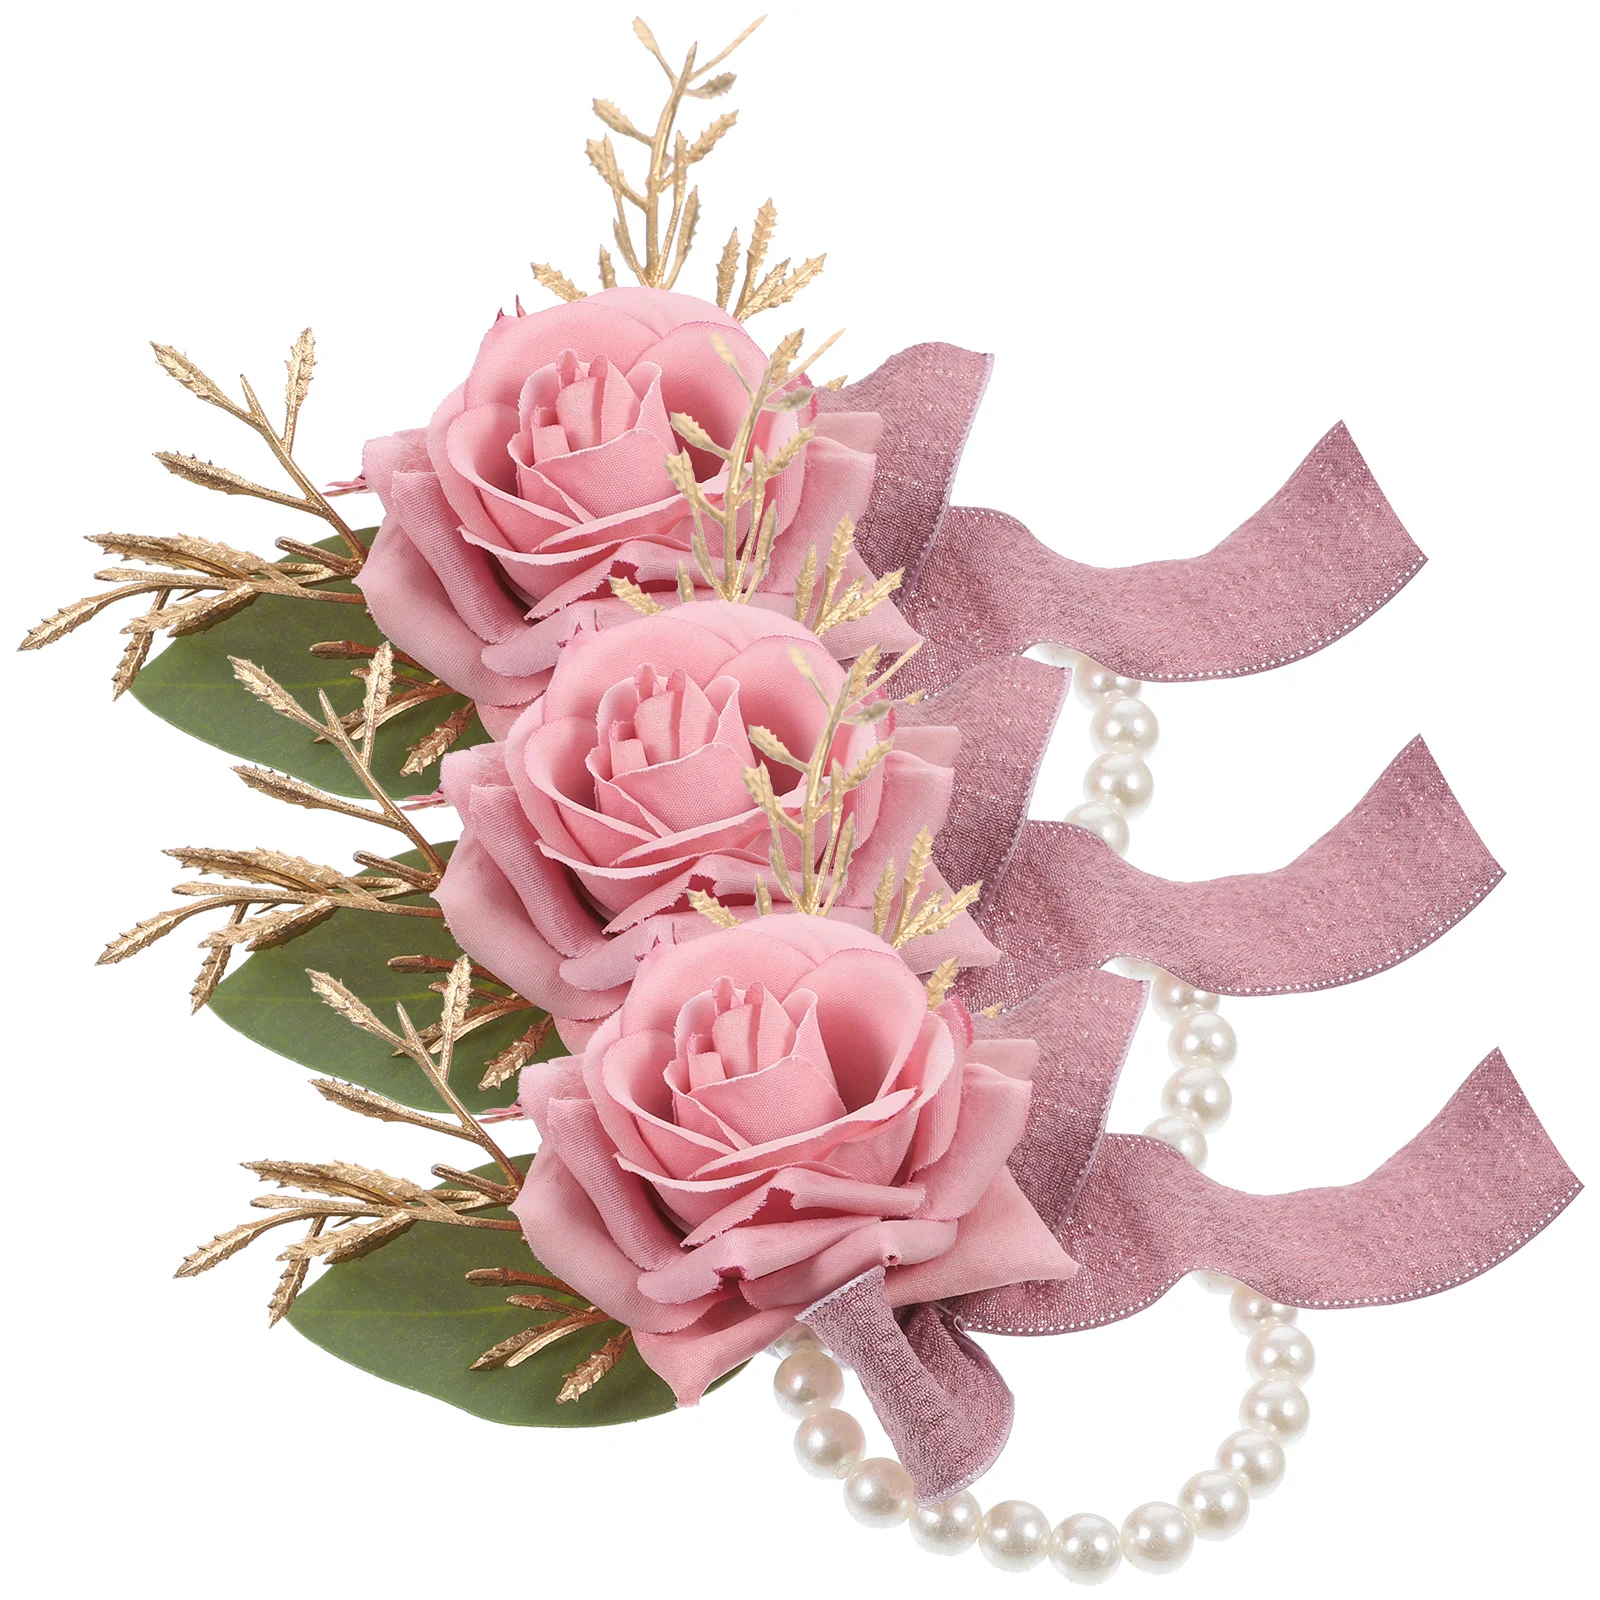 

3 Pcs Wrist Tape Flower Corsage Bracelet Artificial Flowers Bride Plastic Corsages Wedding Bridesmaid